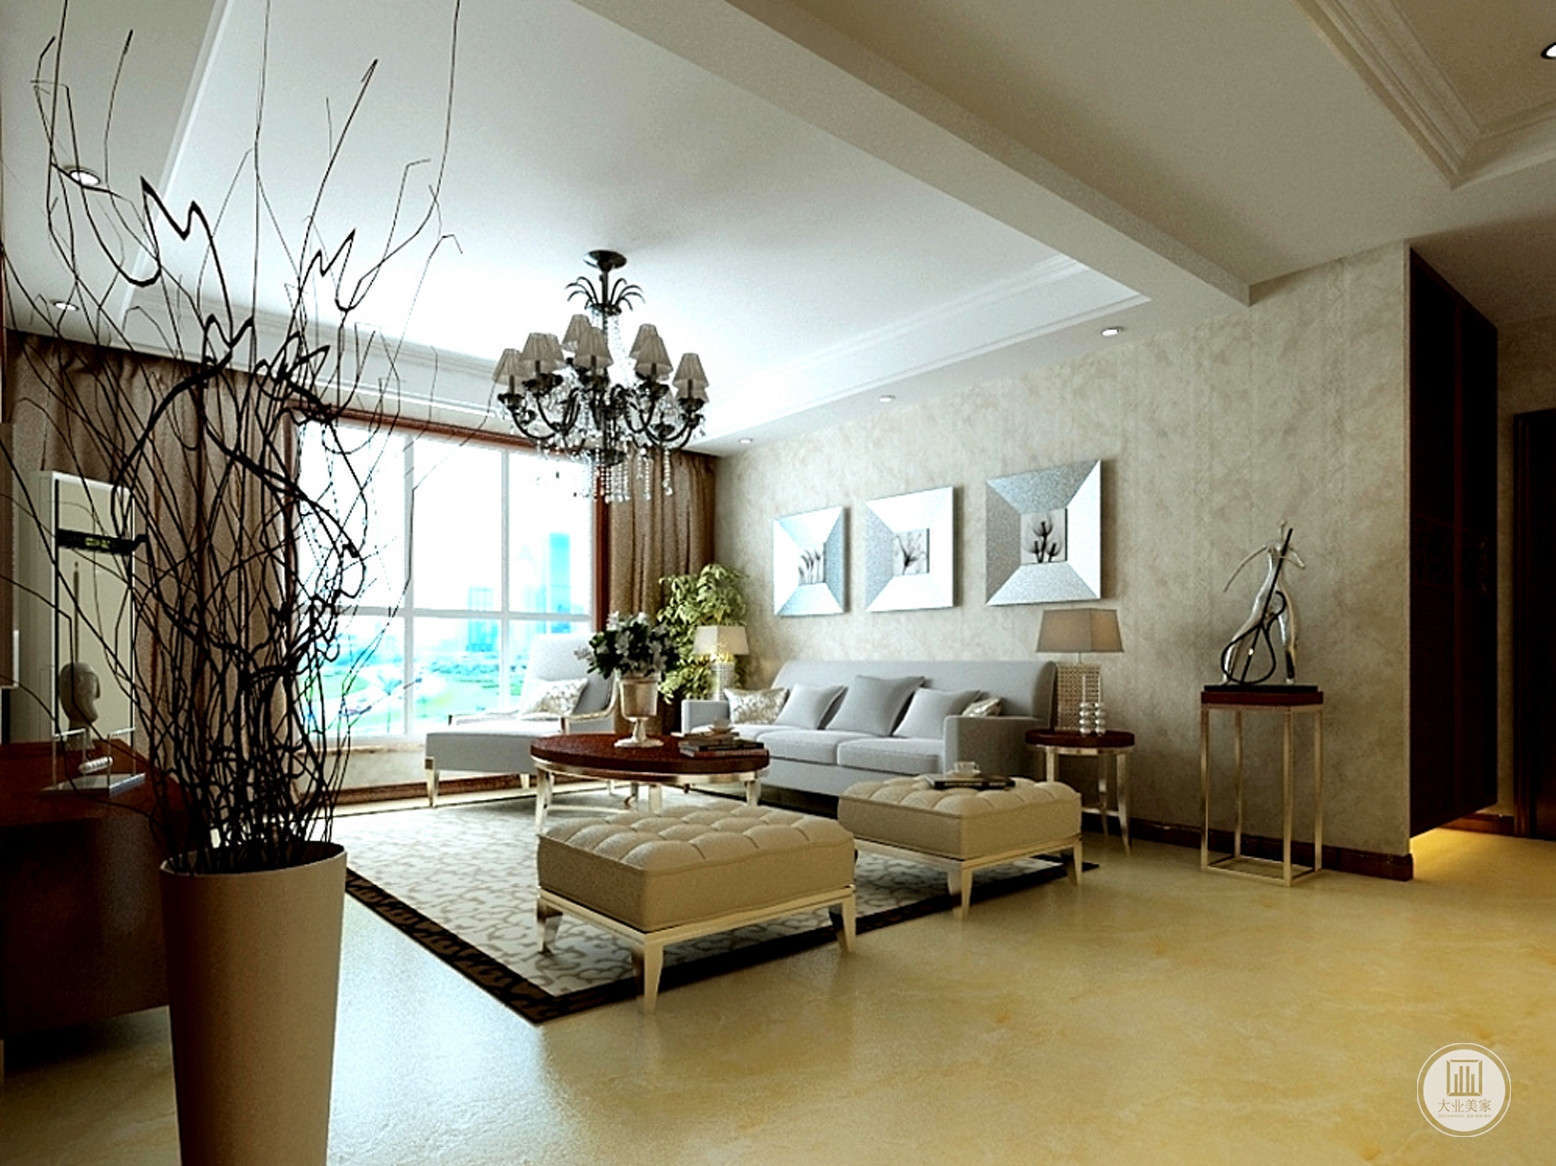 客厅的另一个视角，艺术的盆景，配合现代风格，让整个空间很时尚。